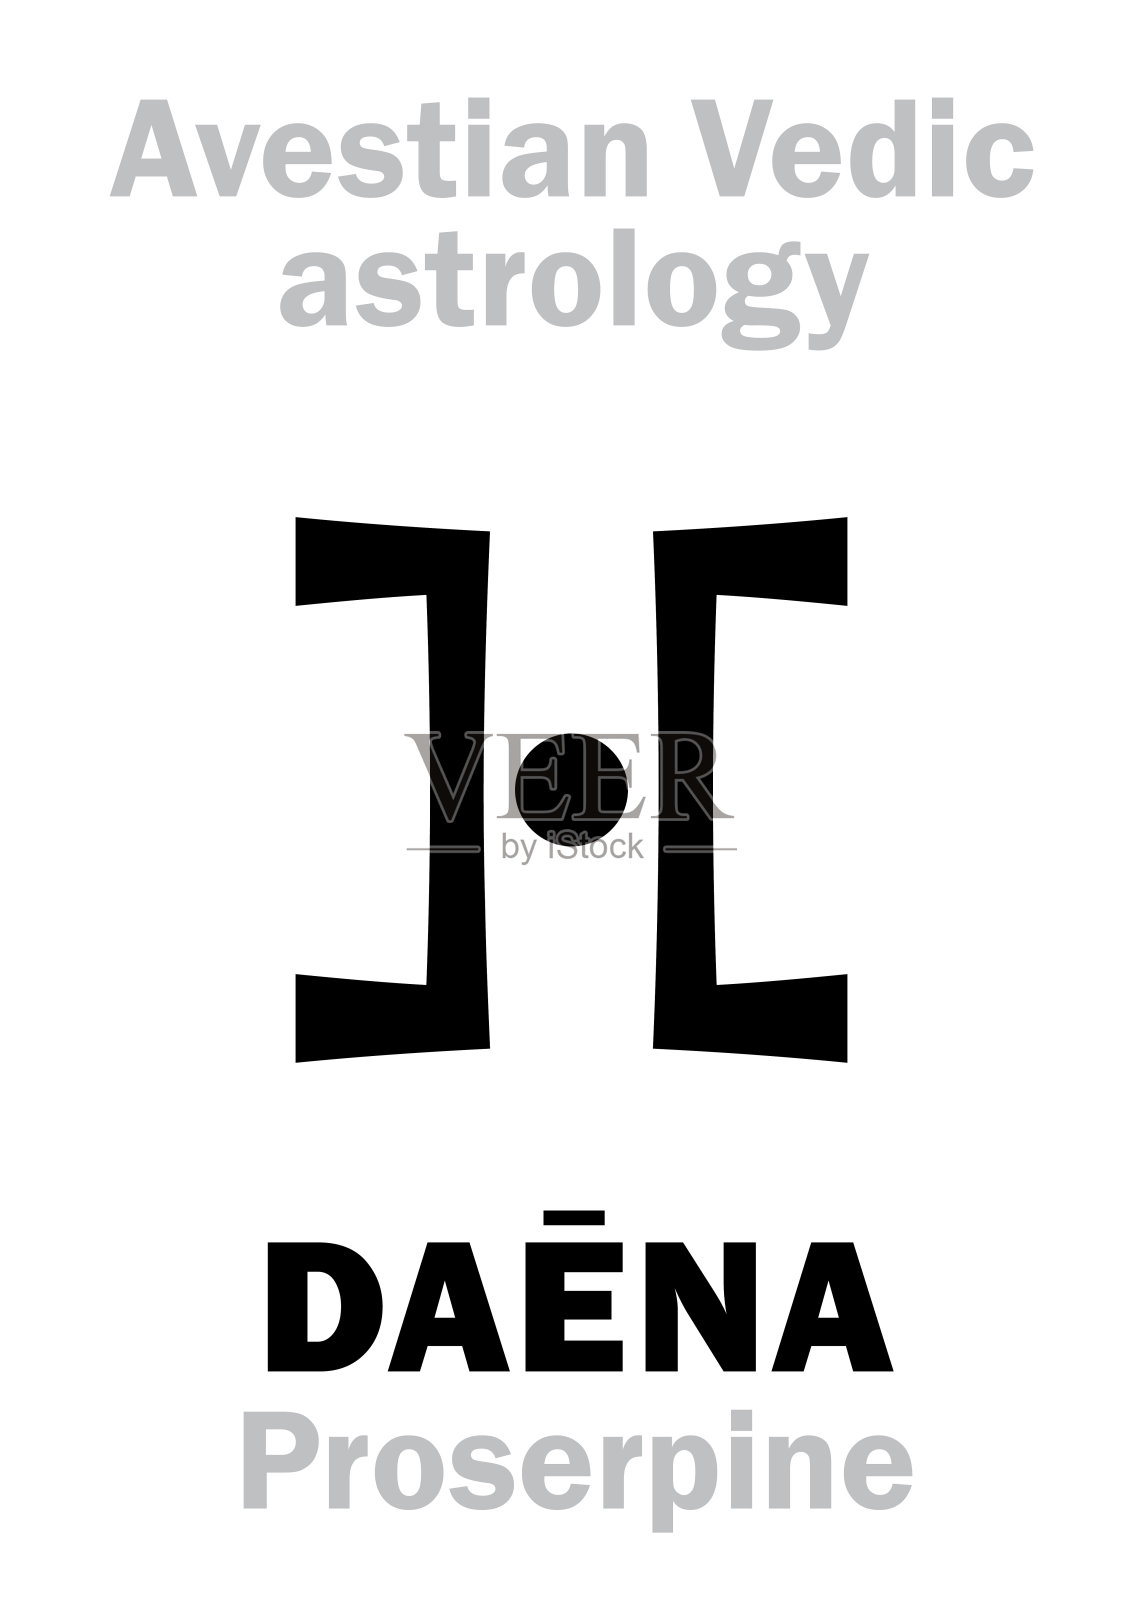 占星字母表:DAĒNA (Proserpine)，阿维斯提吠陀星。象形文字符号(单符号)。插画图片素材